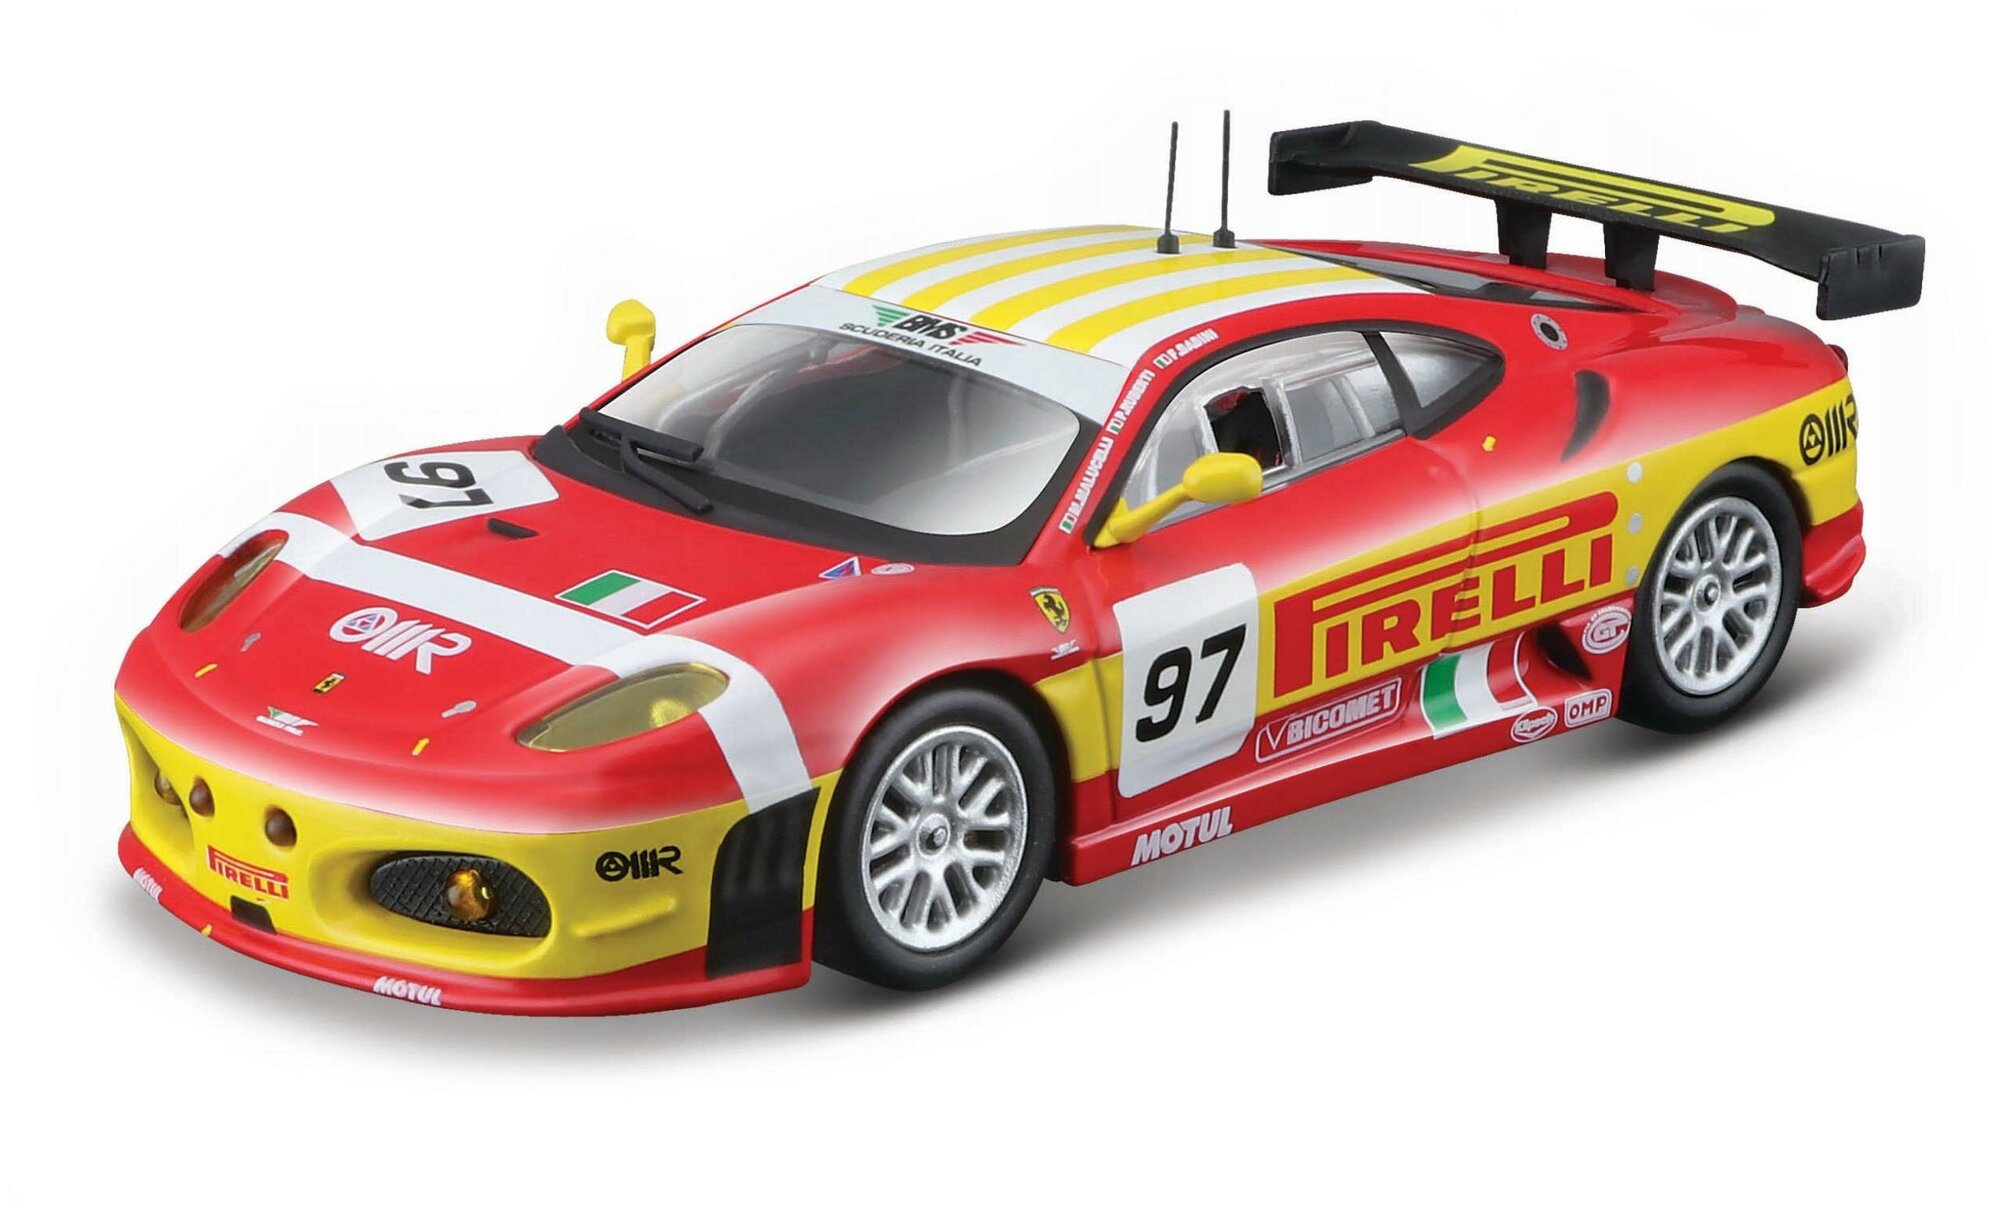 Bburago Коллекционная машинка Феррари 1:43 Ferrari Racing - F430 GTC 2008, красная